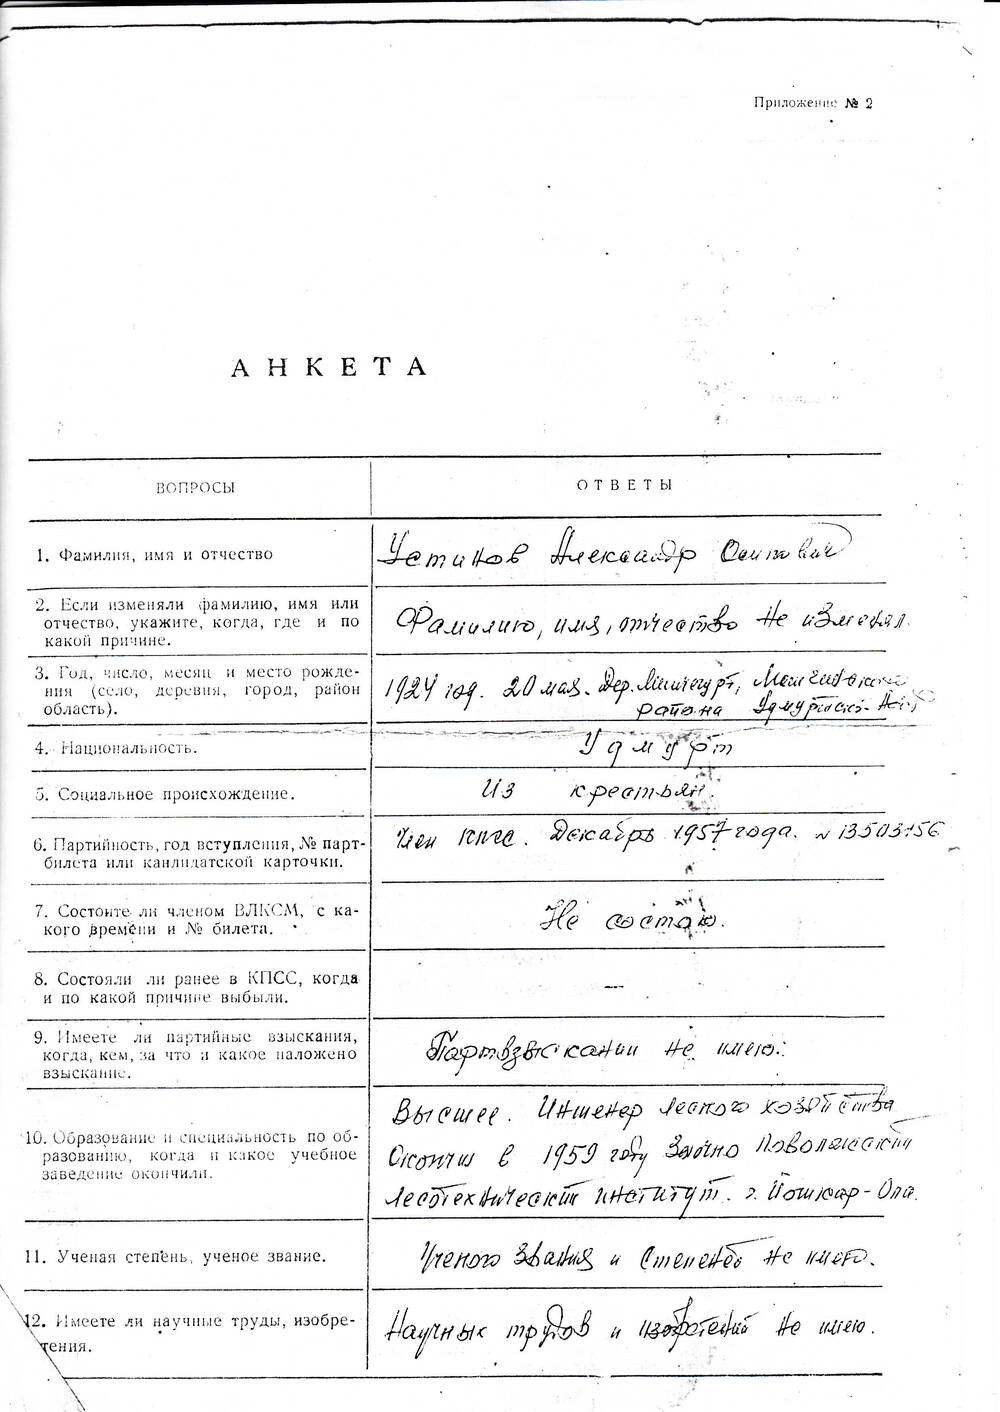 Анкета Устинова Александра Осиповича, ветерана Великой Отечественной войны 1941-1945 гг., с краткими биографическими данными.